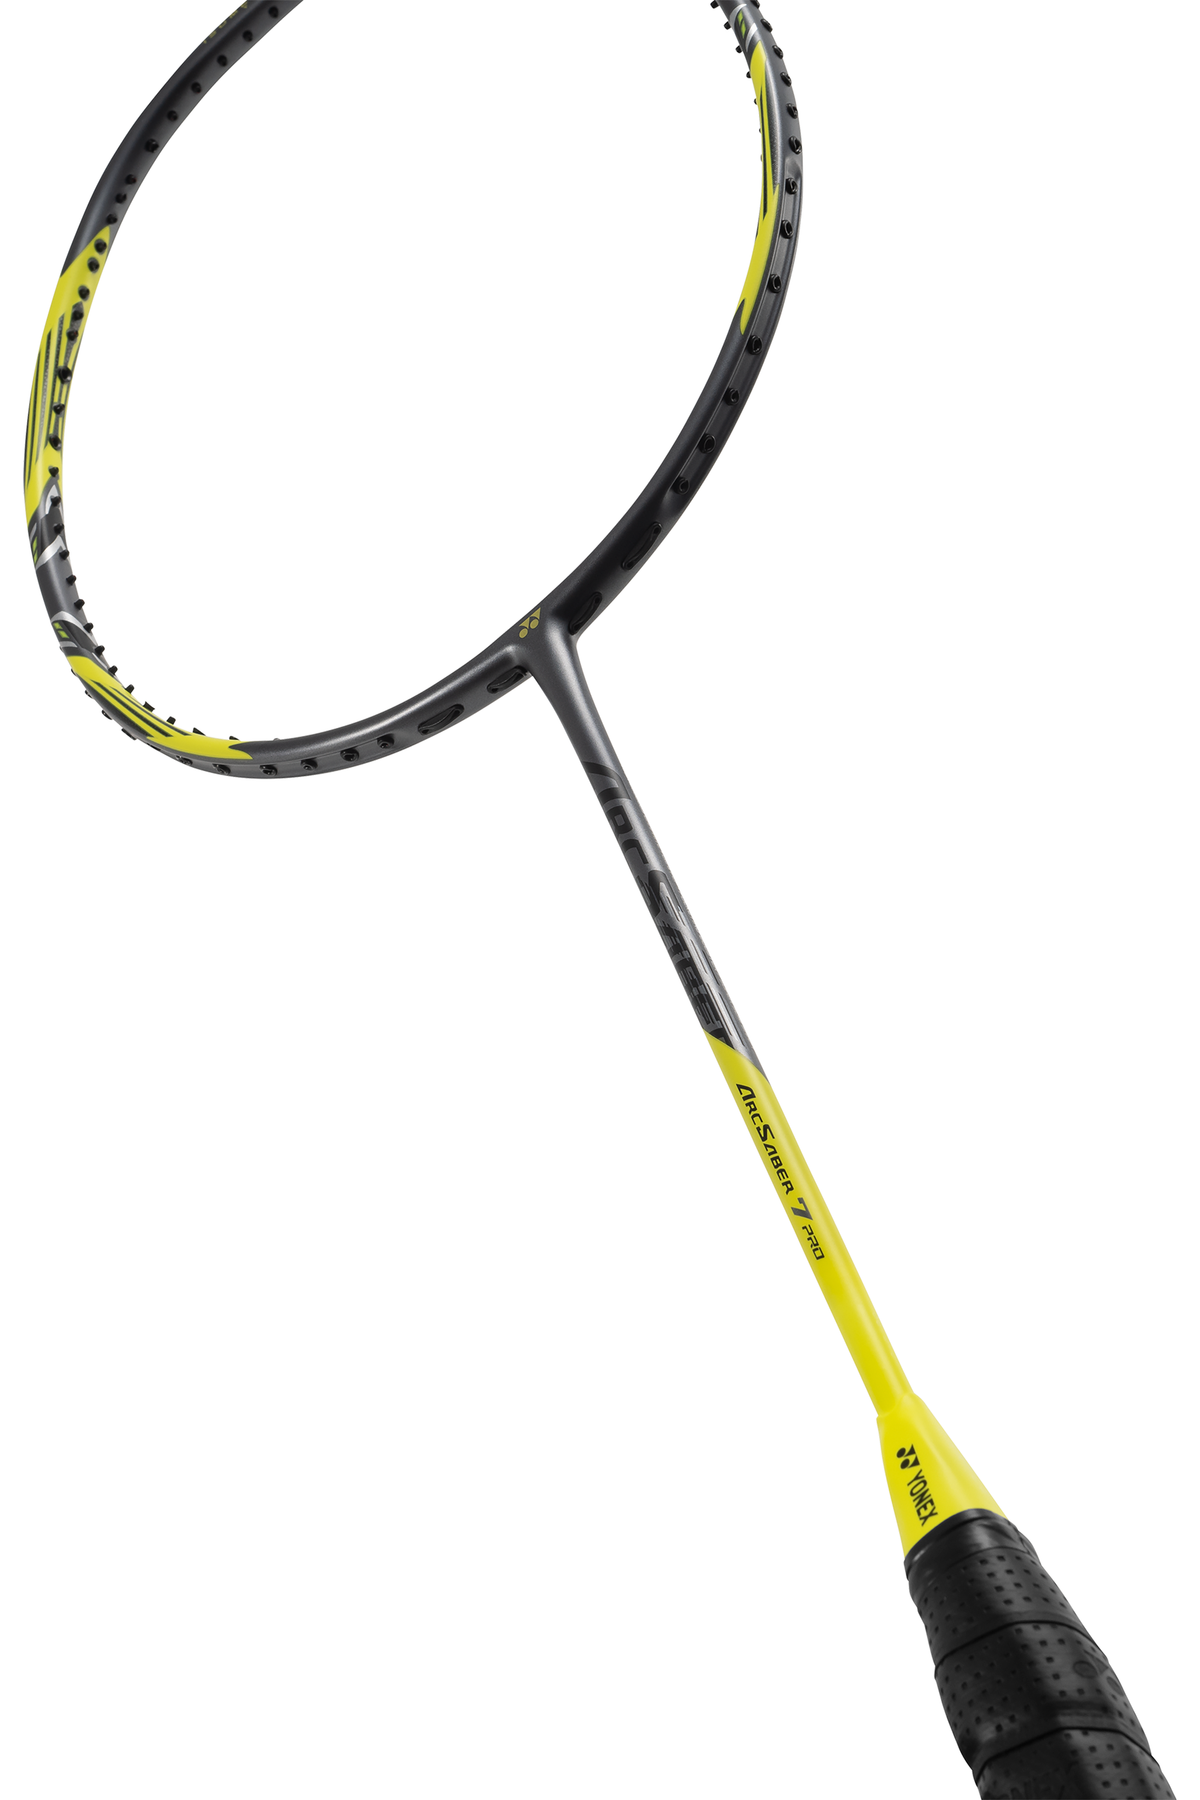 Yonex ArcSaber 7 Pro Badminton Racket